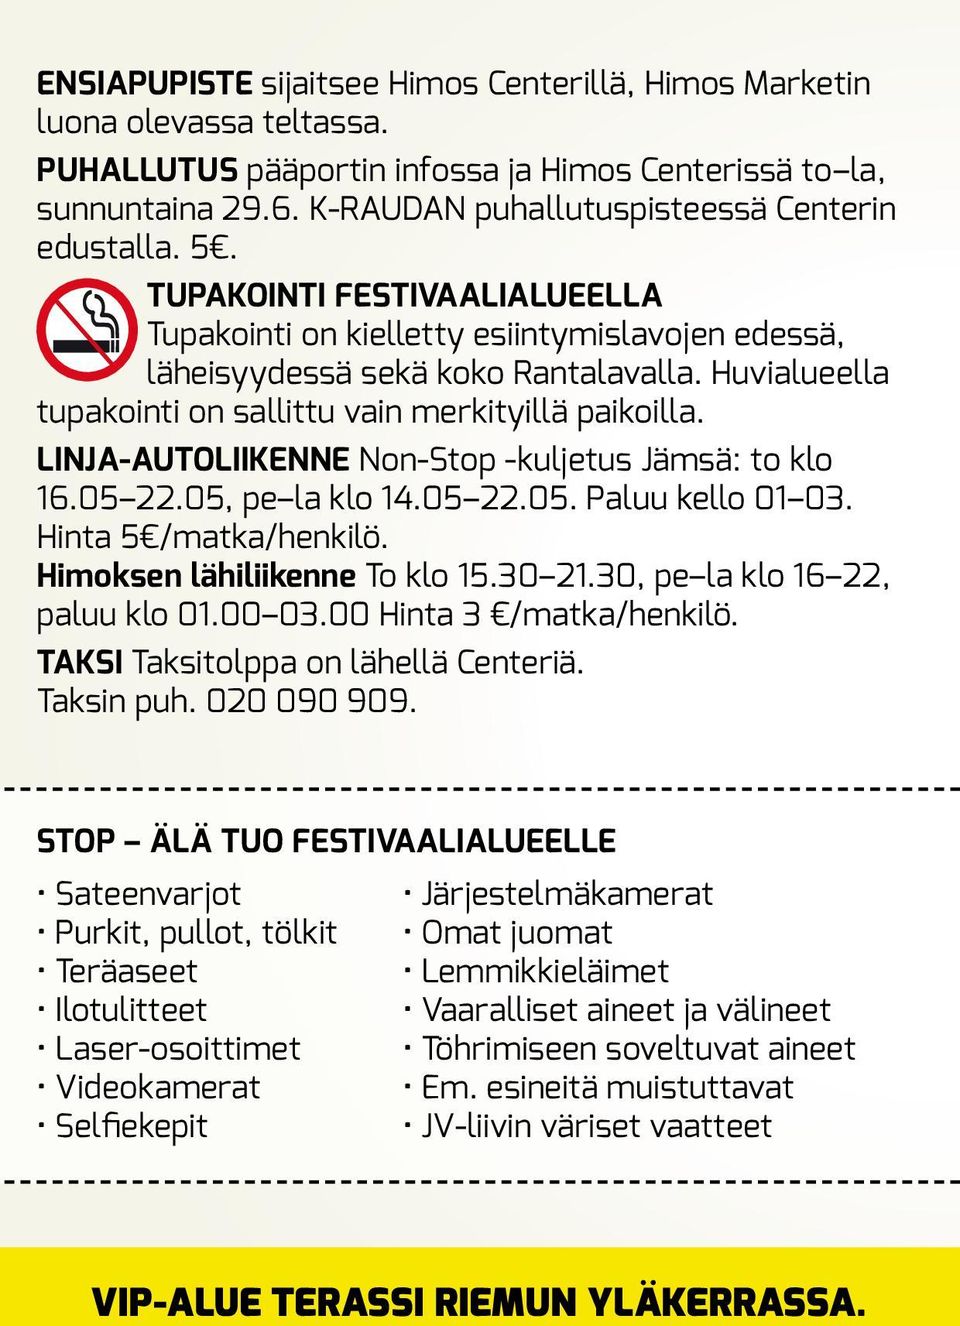 Huvialueella tupakointi on sallittu vain merkityillä paikoilla. LINJA-AUTOLIIKENNE Non-Stop -kuljetus Jämsä: to klo 16.05 22.05, pe la klo 14.05 22.05. Paluu kello 01 03. Hinta 5 /matka/henkilö.